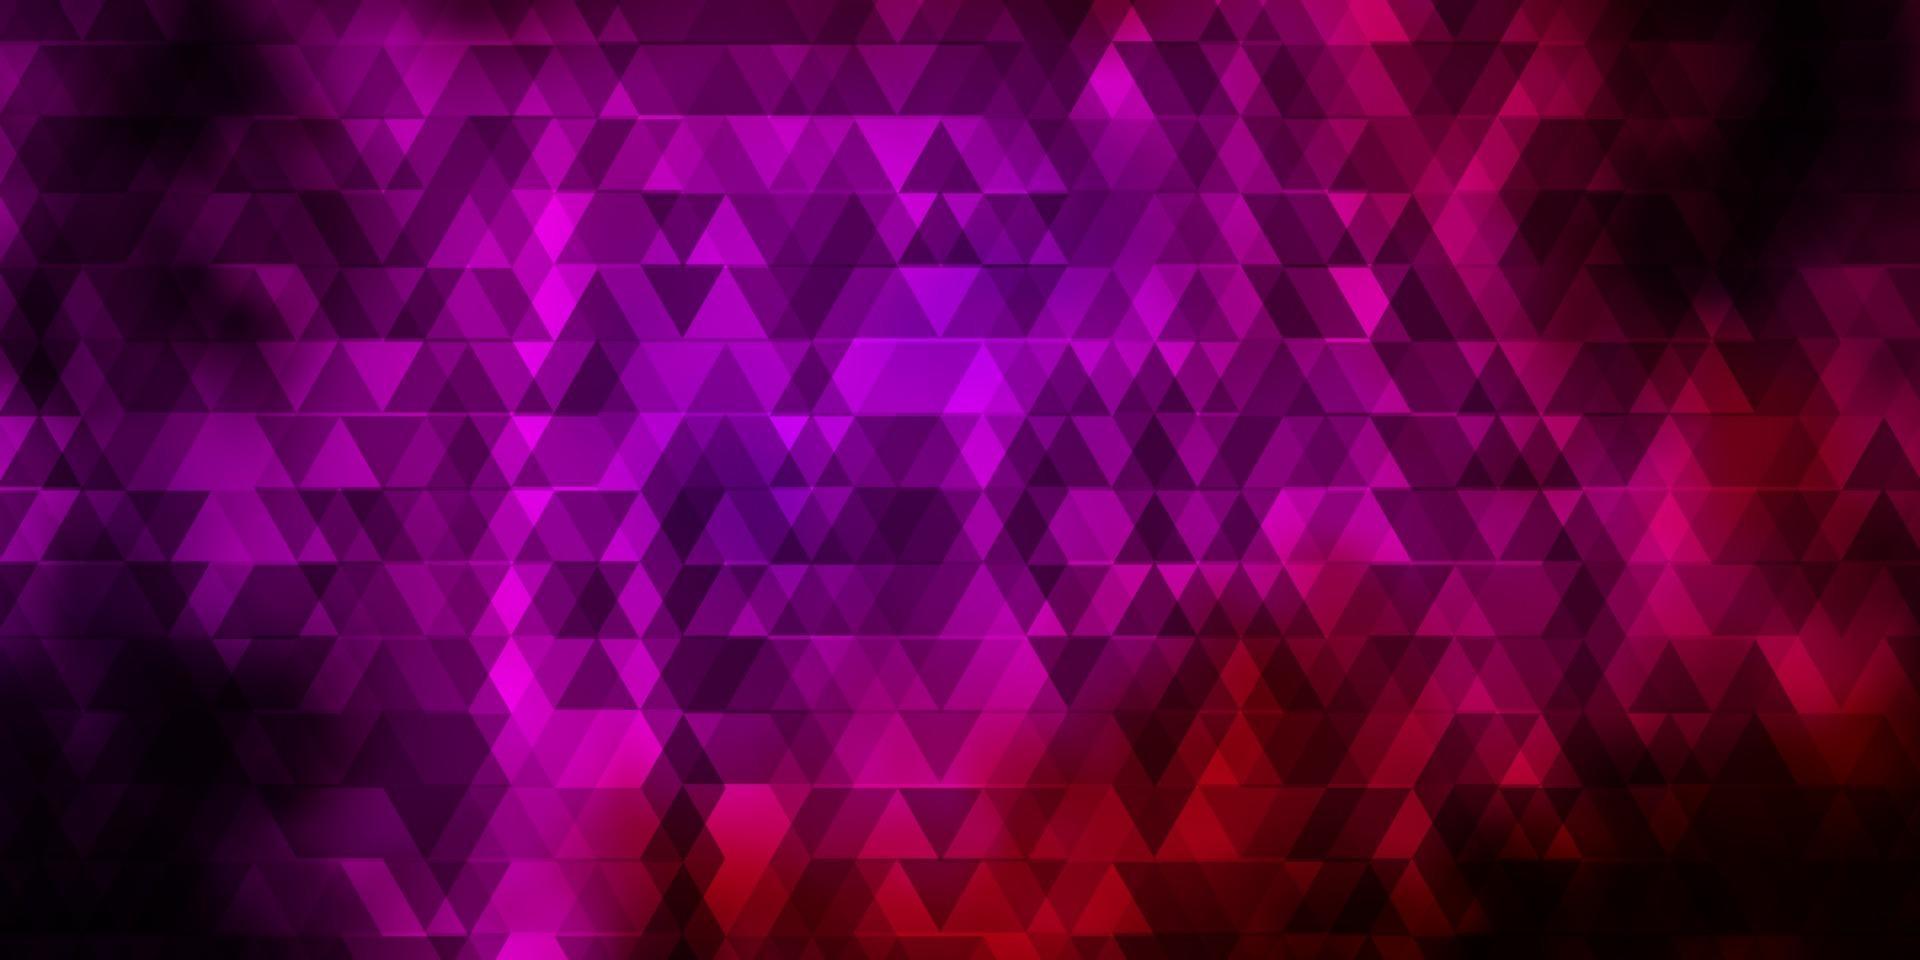 sfondo vettoriale rosa scuro con linee, triangoli.